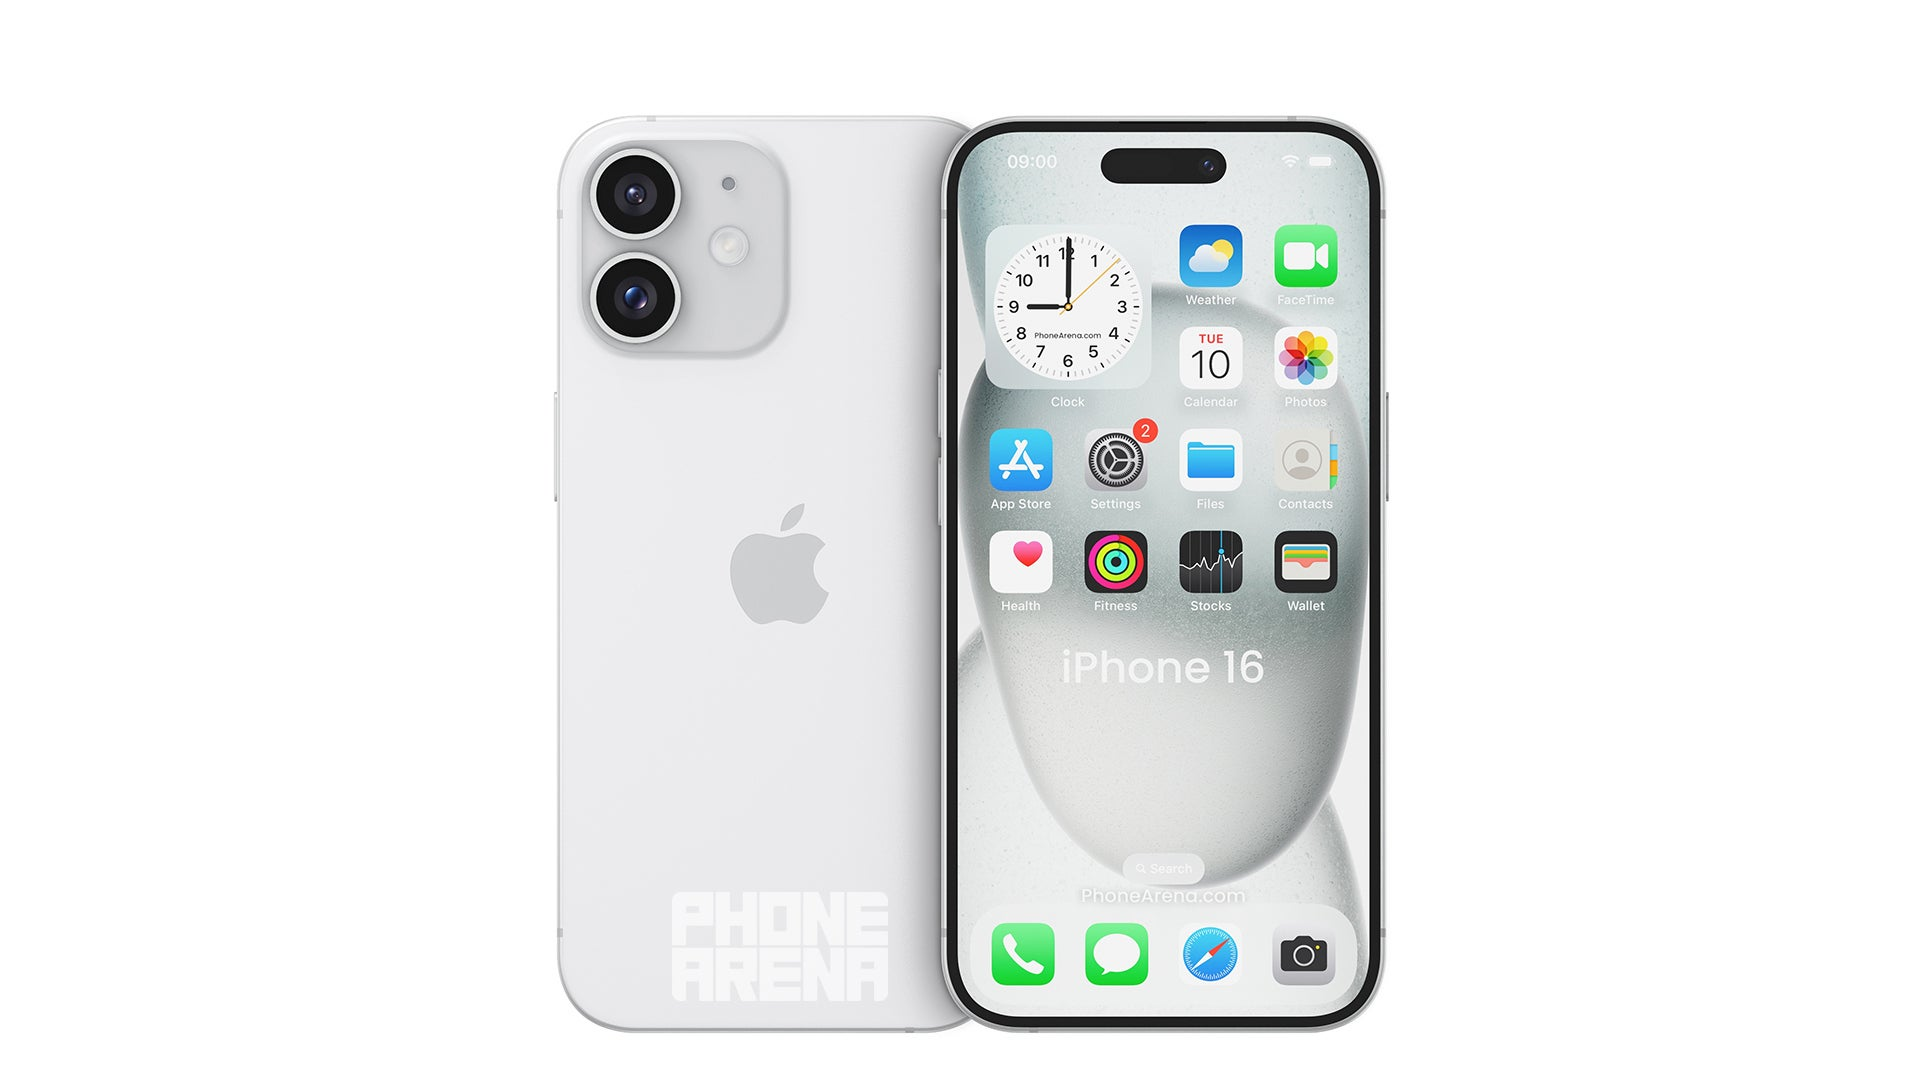 İşte iPhone 16 ve iPhone 16 Plus kamera adasının nasıl görüneceği (Resim––PhoneArena) - iPhone 16: Hakkında bilmeniz gereken en önemli 7 söylenti